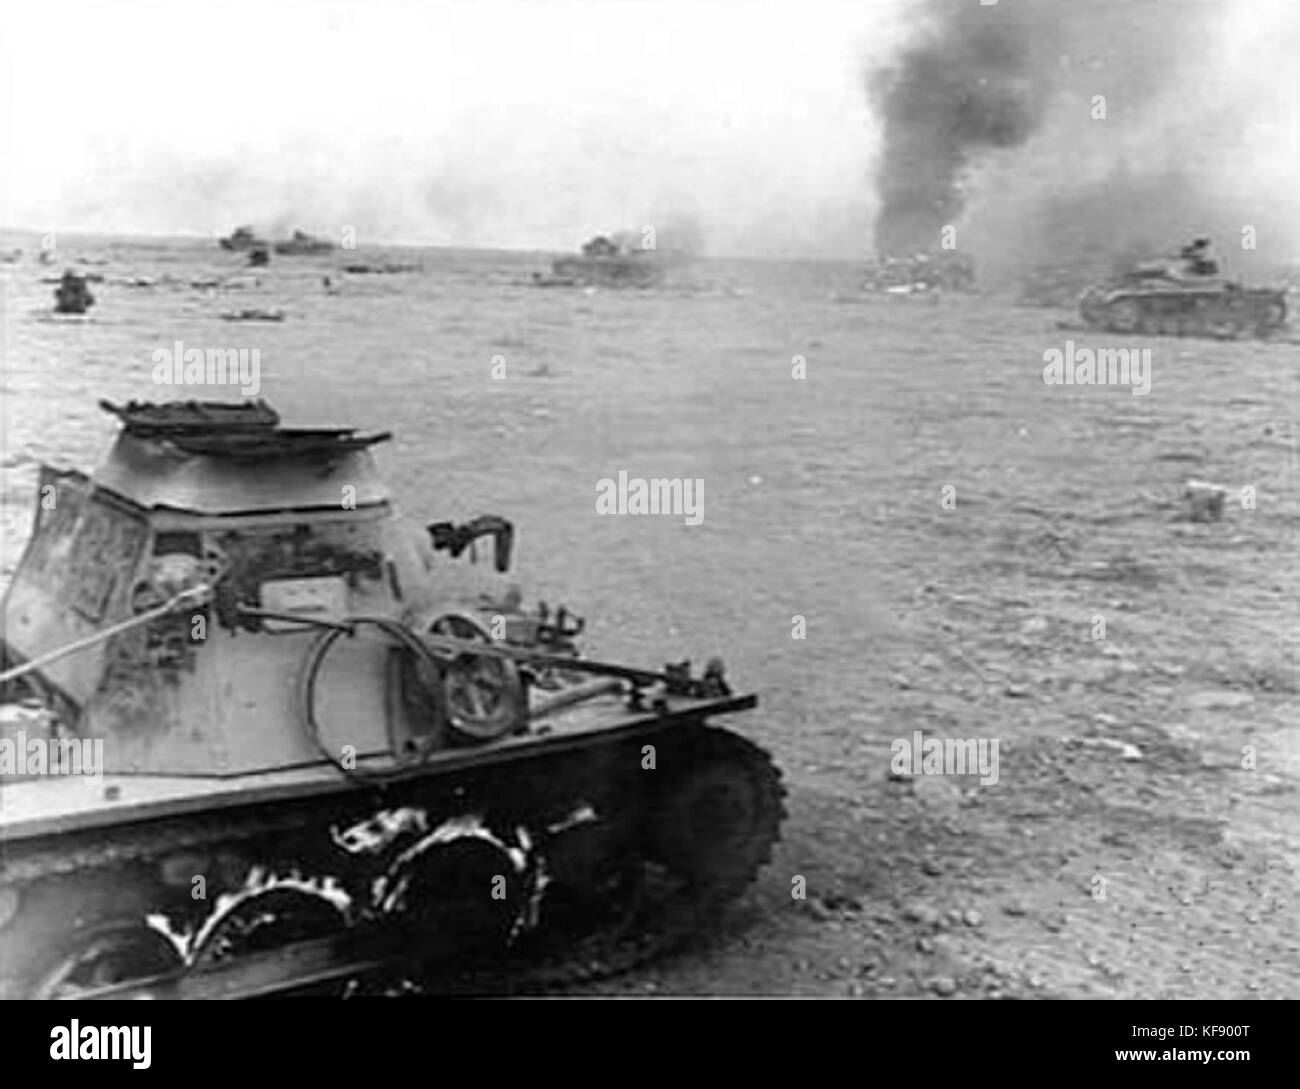 Burning Panzer I Libya 1942 Stock Photo